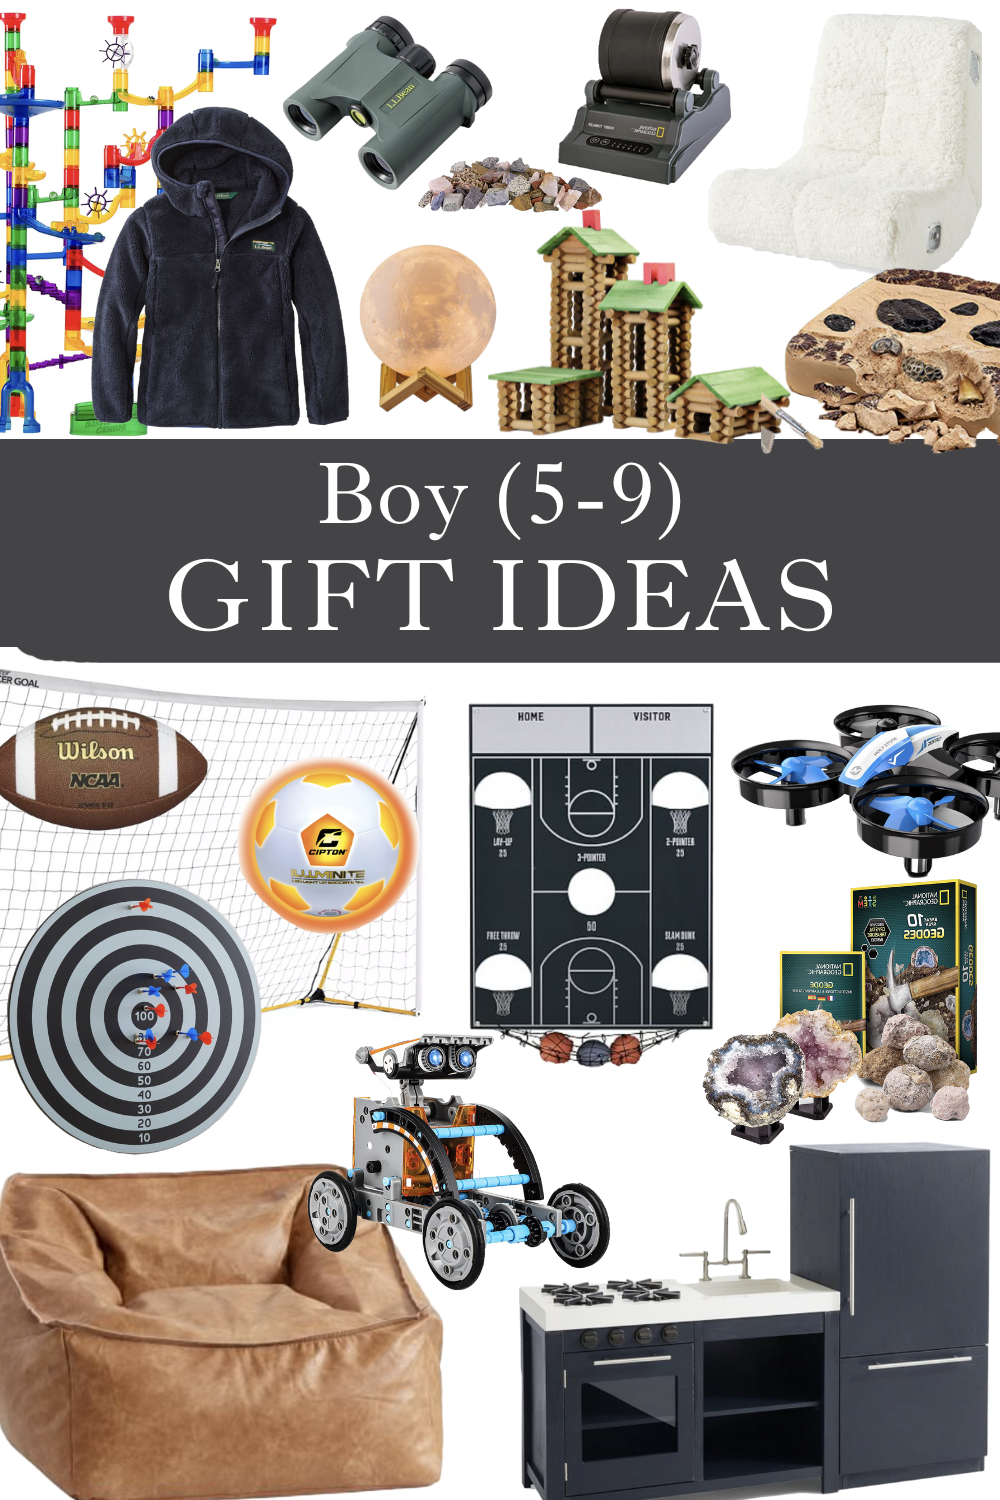 Boy gift ideas